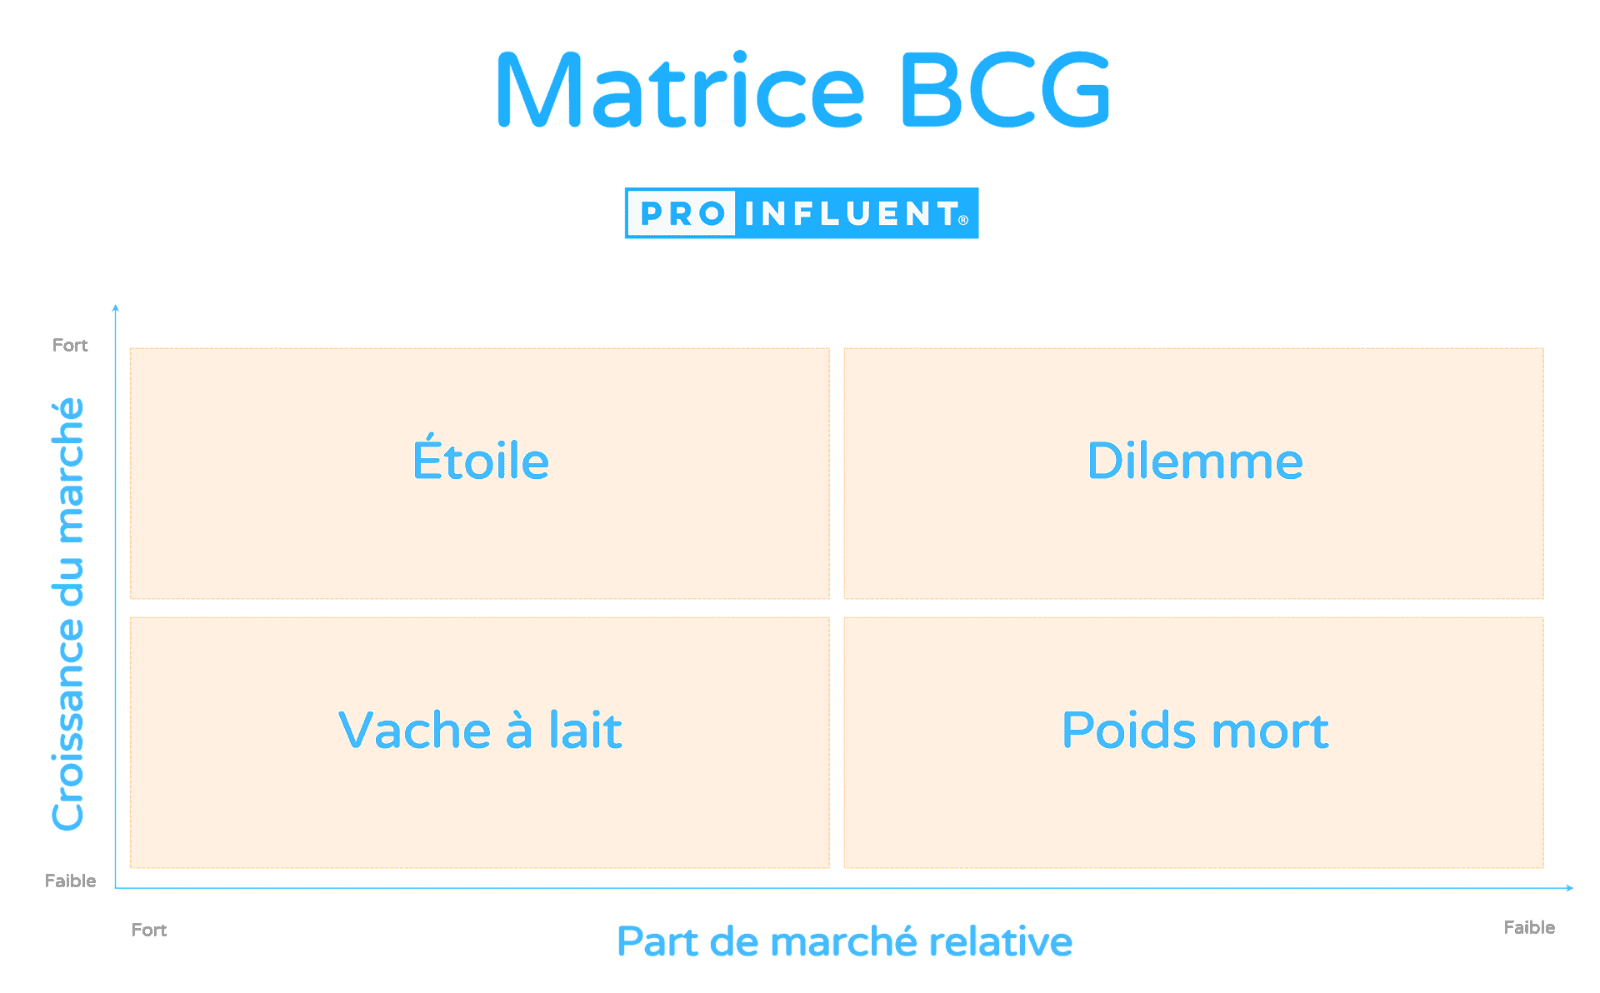 How to make a BCG matrix